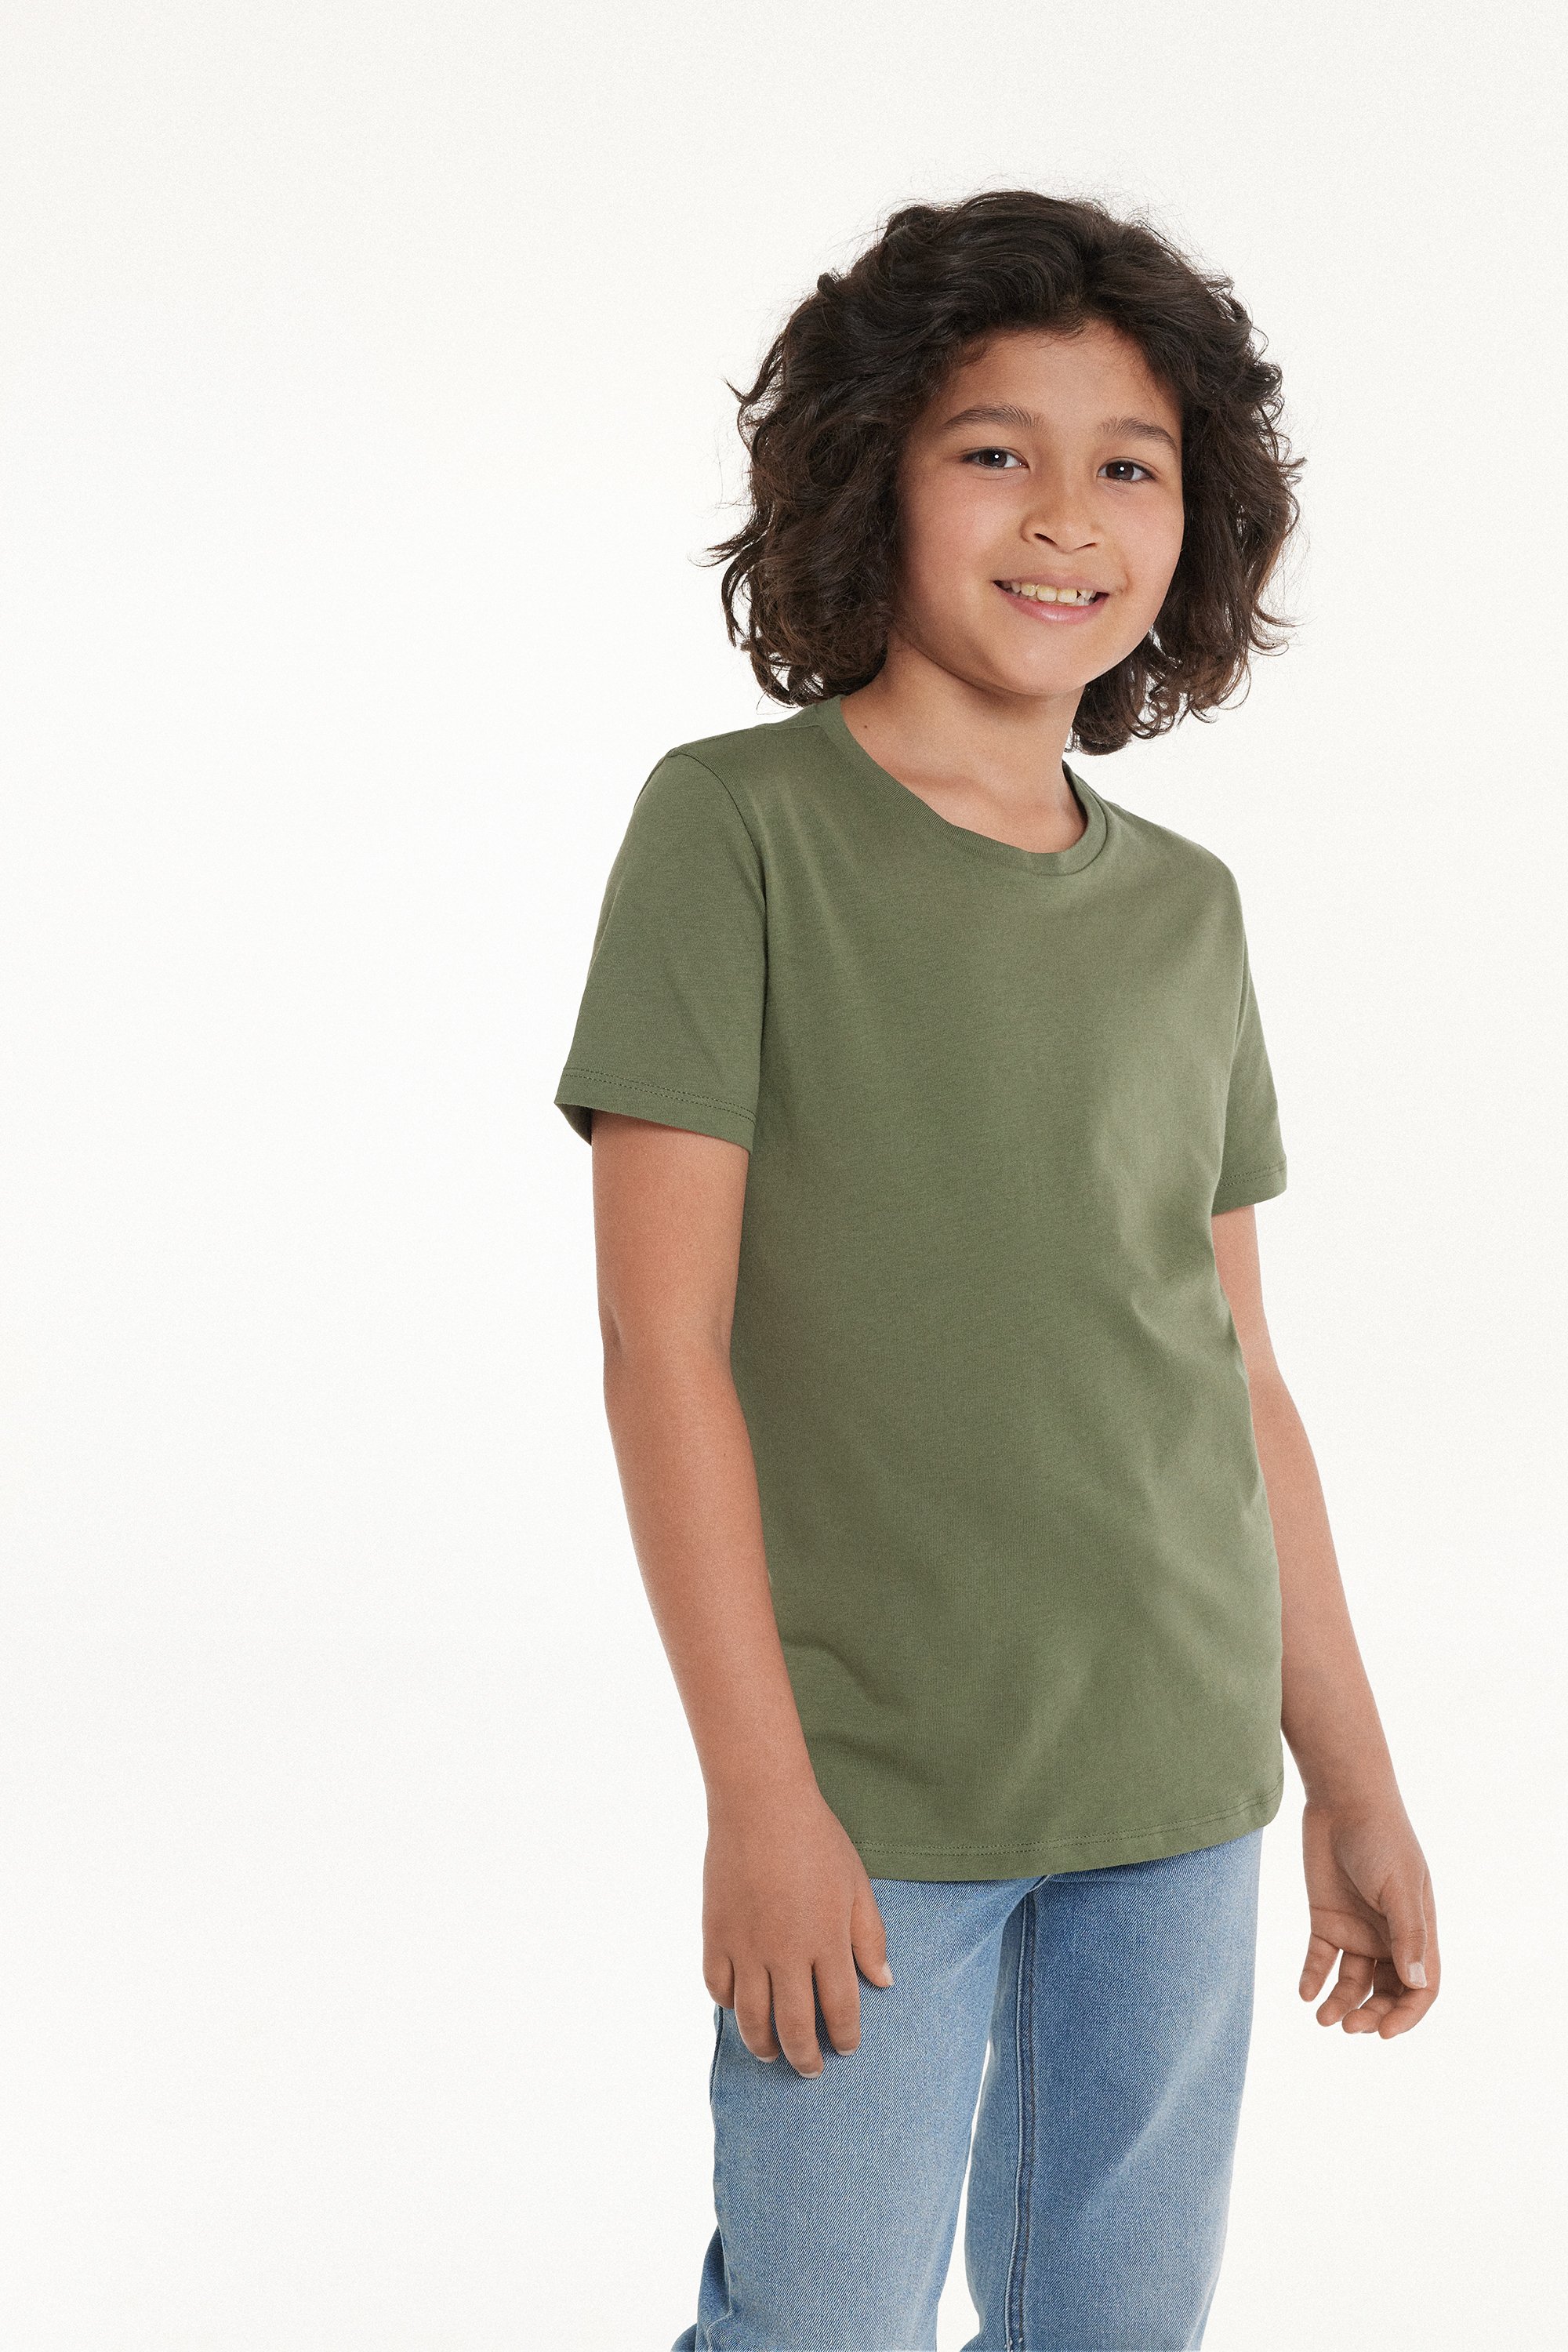 T-Shirt Básica Decote Redondo em 100% Algodão Criança Unissexo